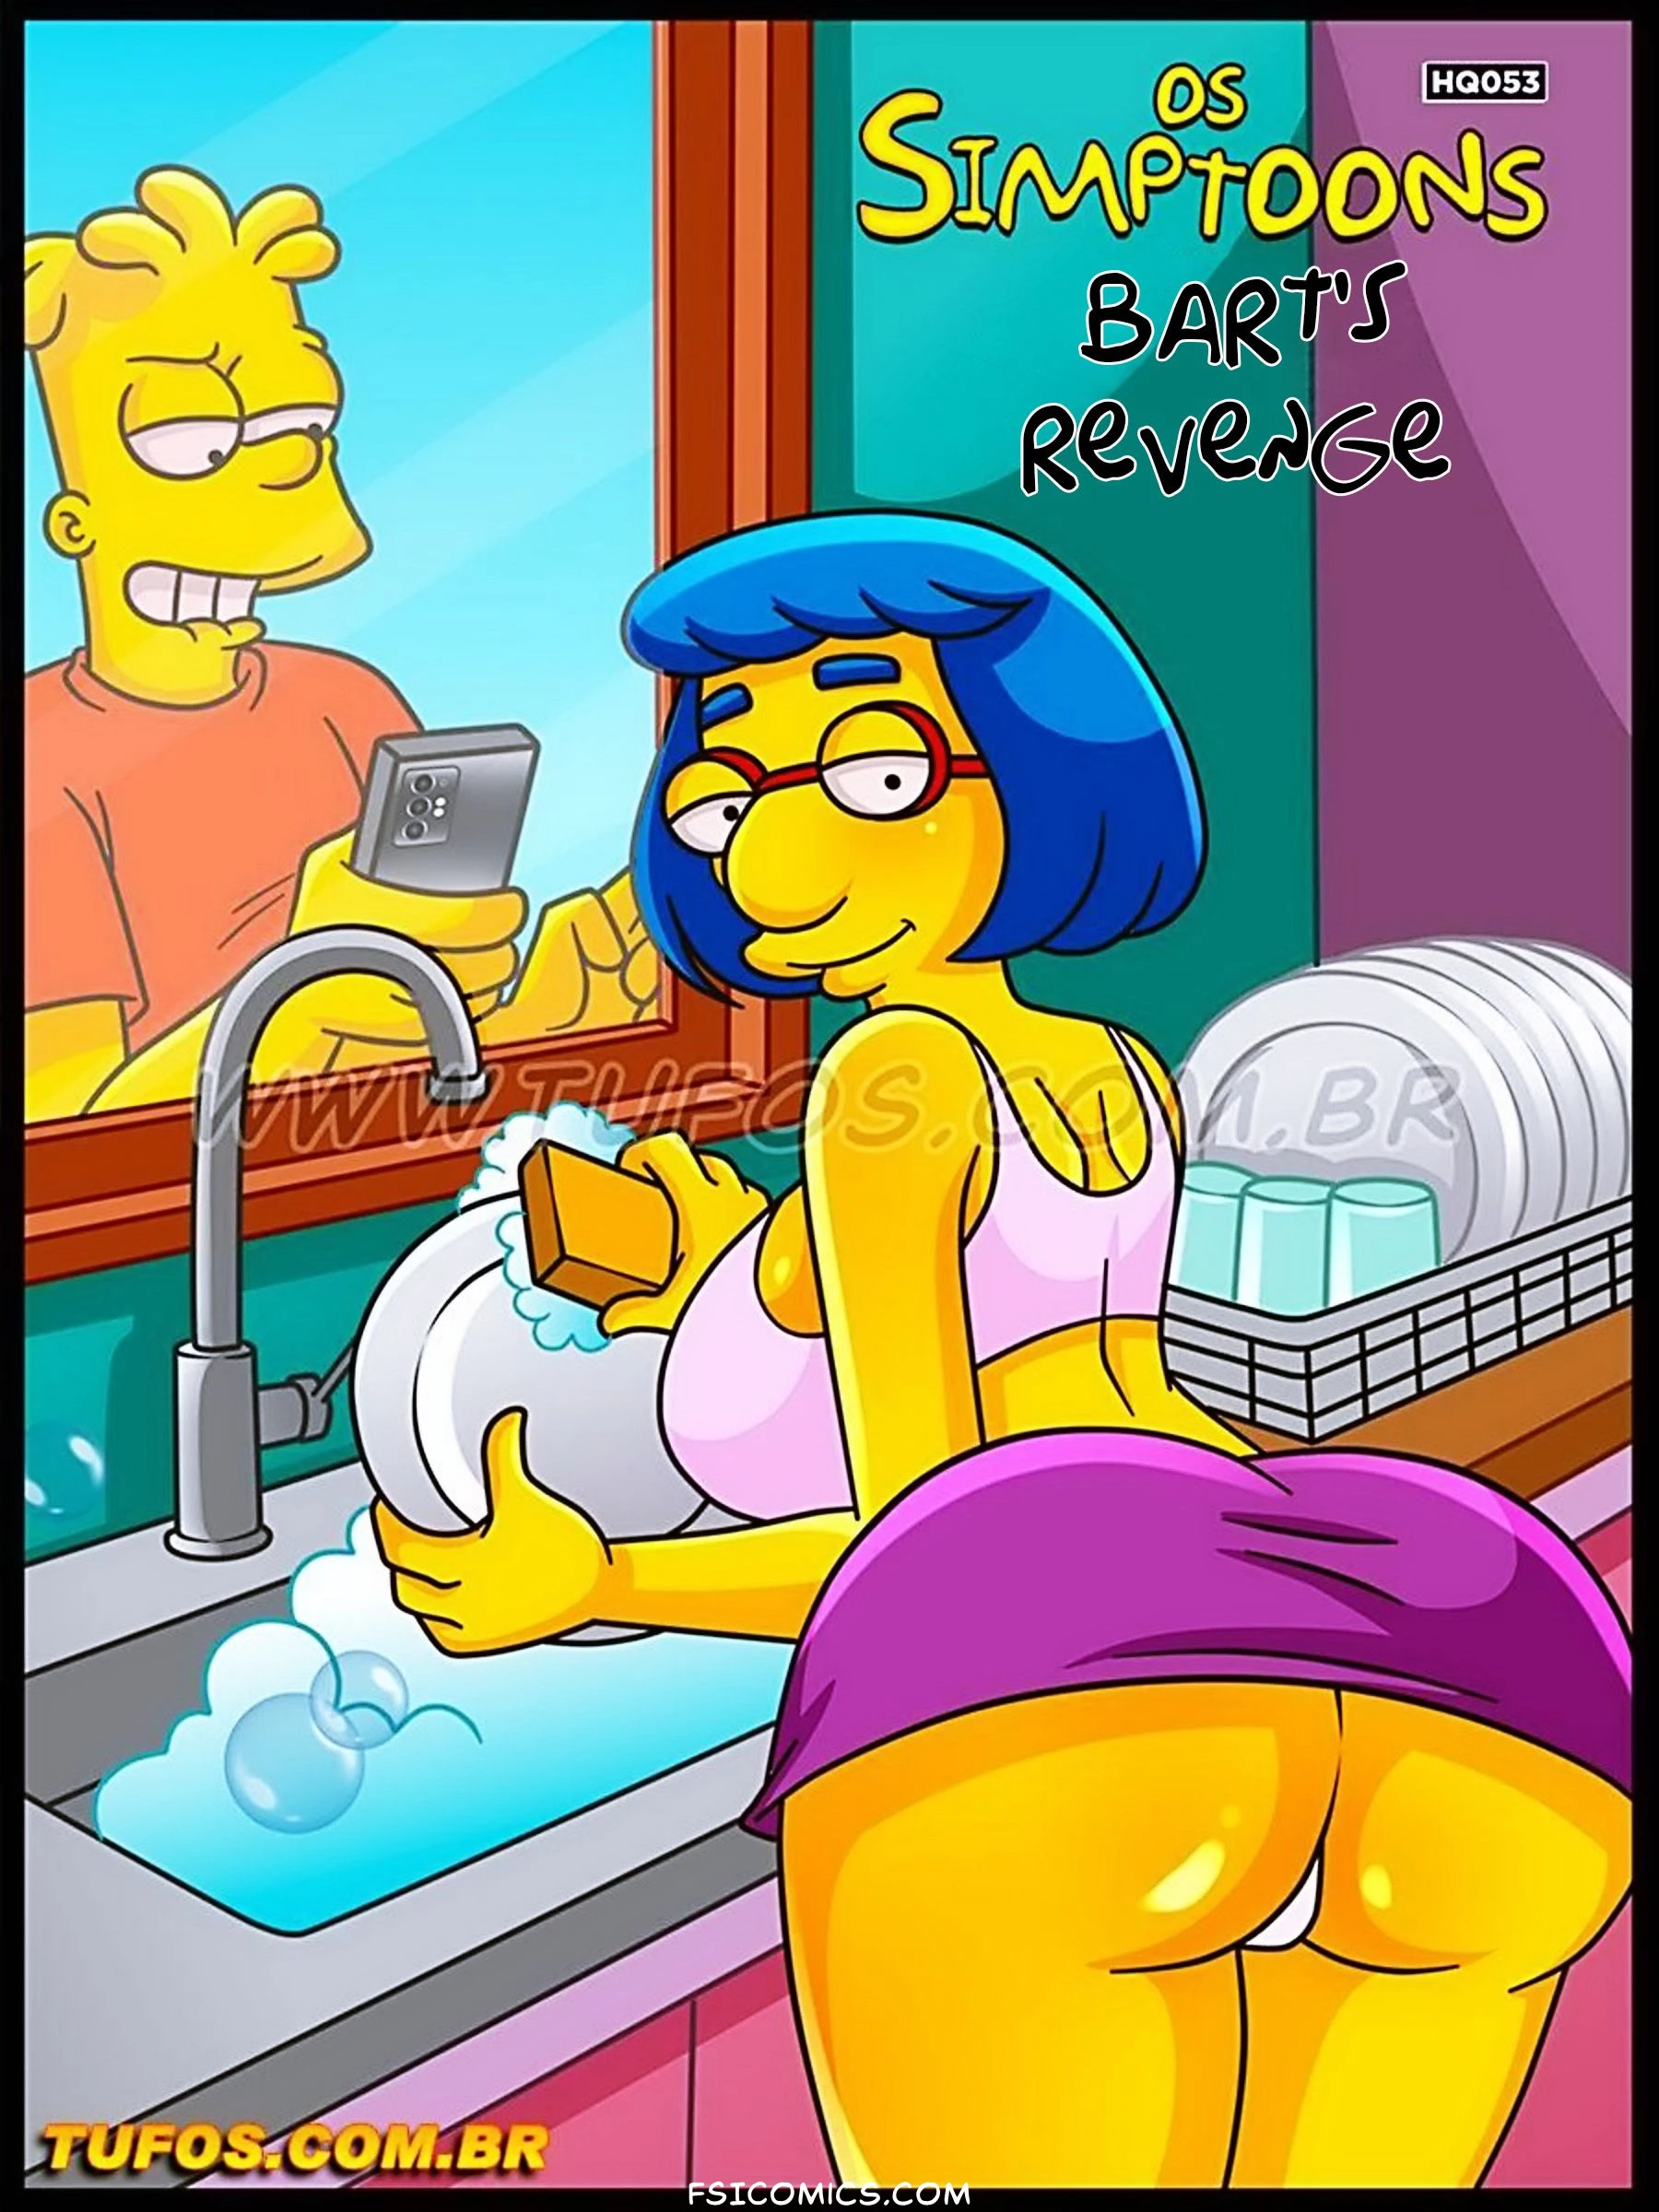 The Simpsons Chapter 53 – Bart's Revenge – WC TF - 59 - FSIComics